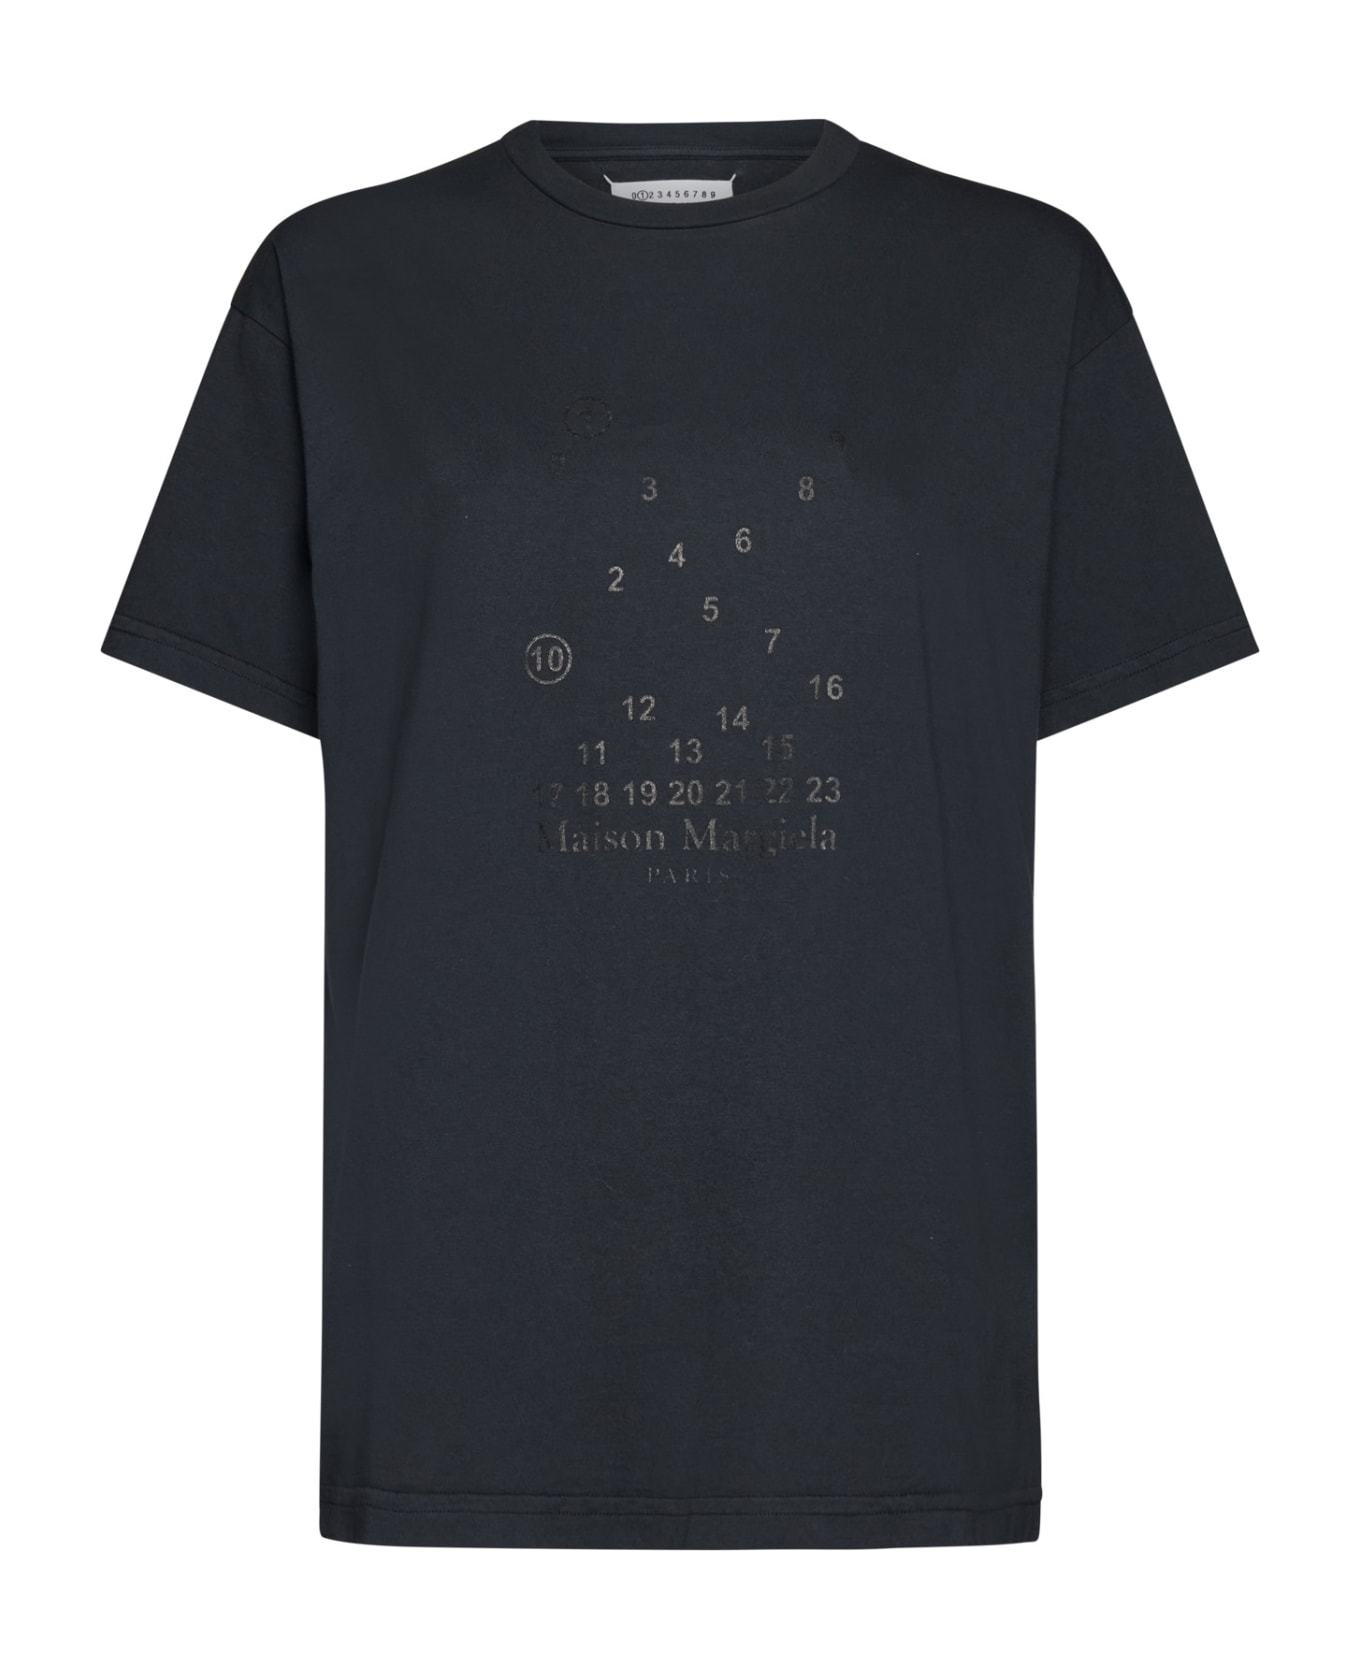 Maison Margiela T-Shirt - Black delave